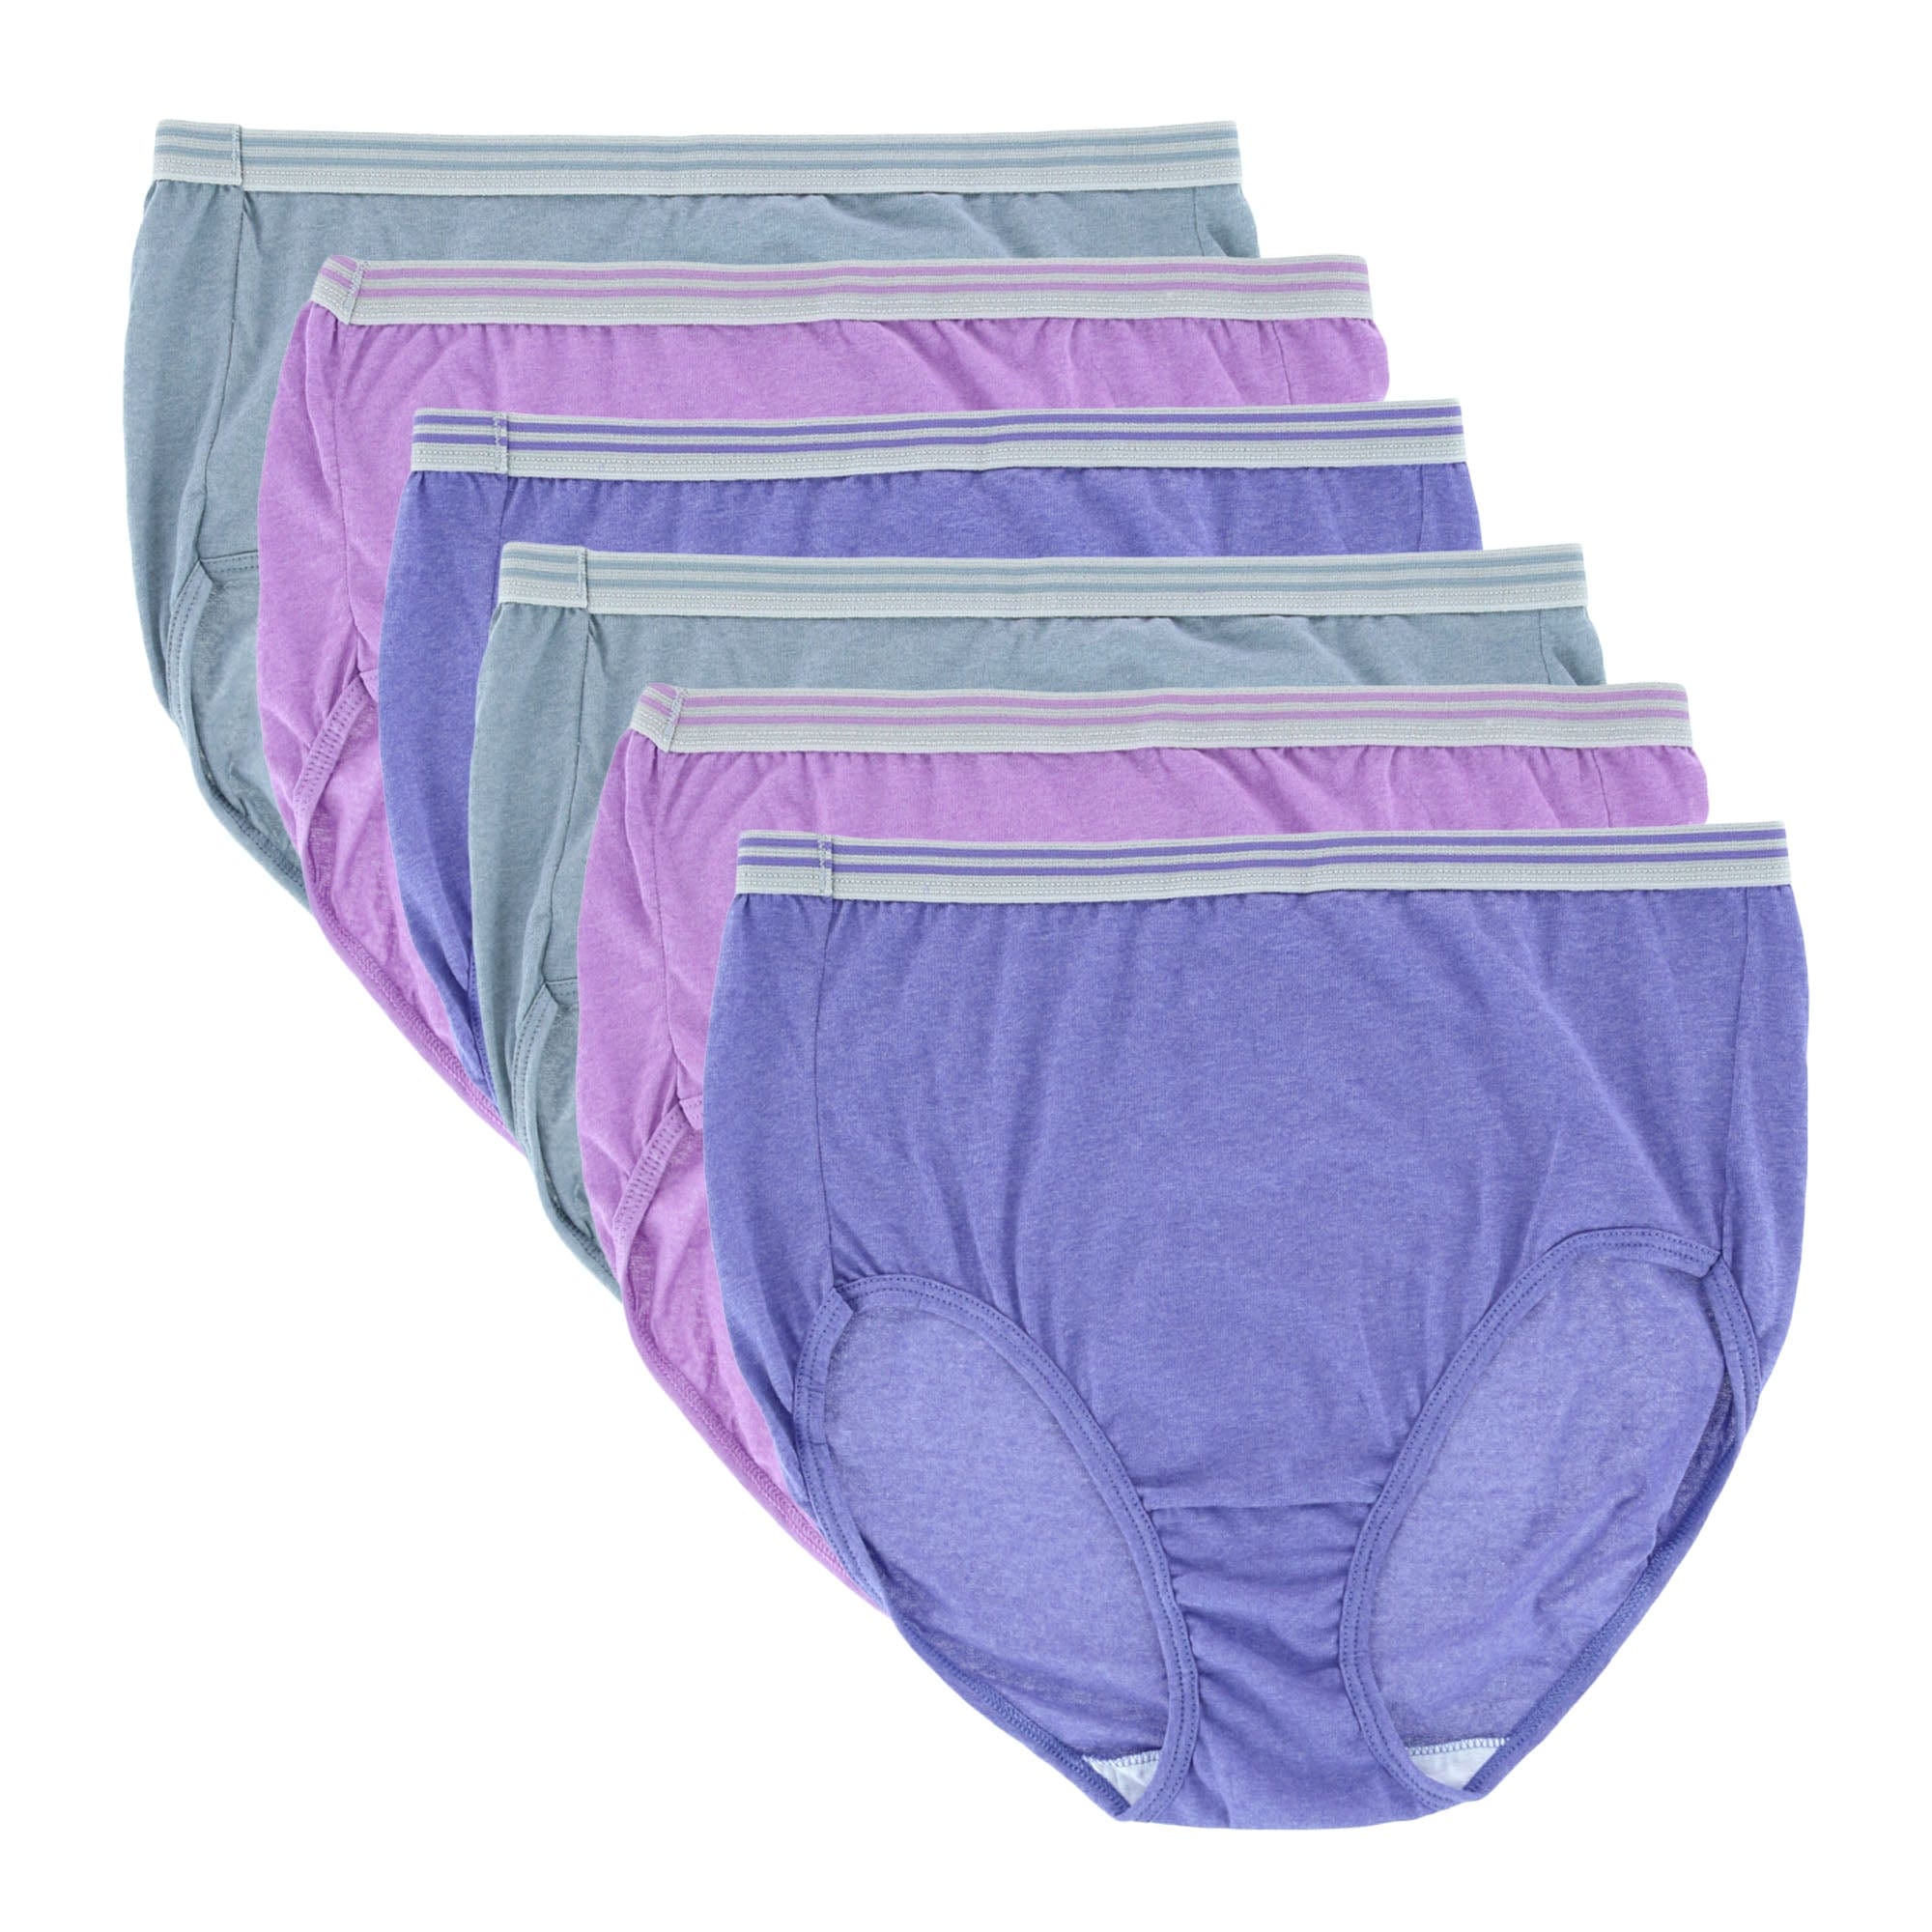 Best Deal for Case Ih Women's Breathable Underwear,Novelty Briefs